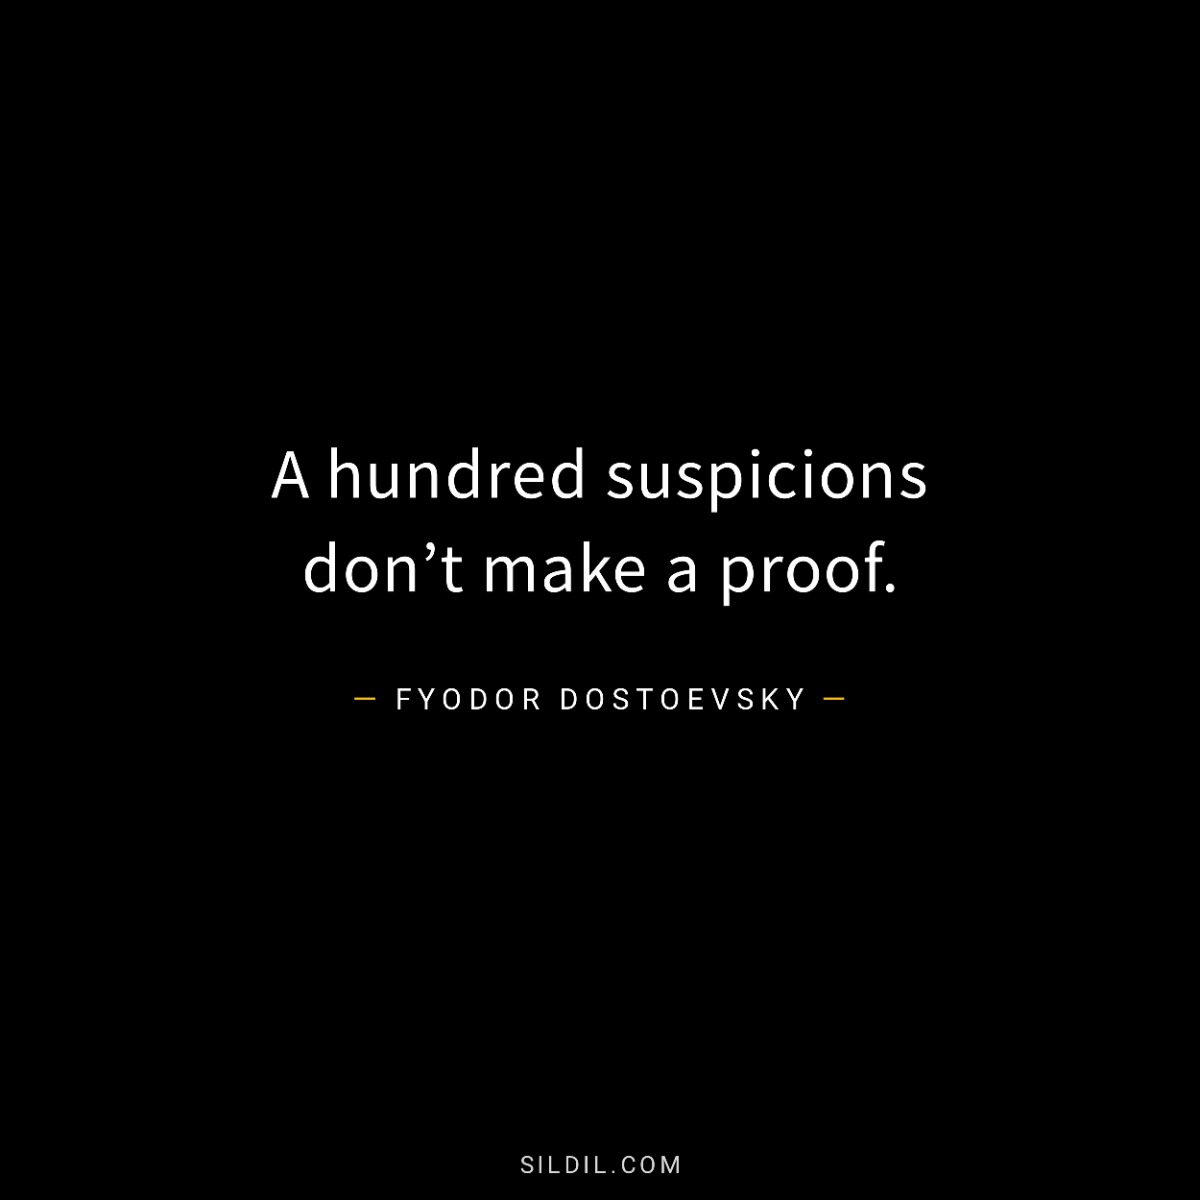 A hundred suspicions don’t make a proof.